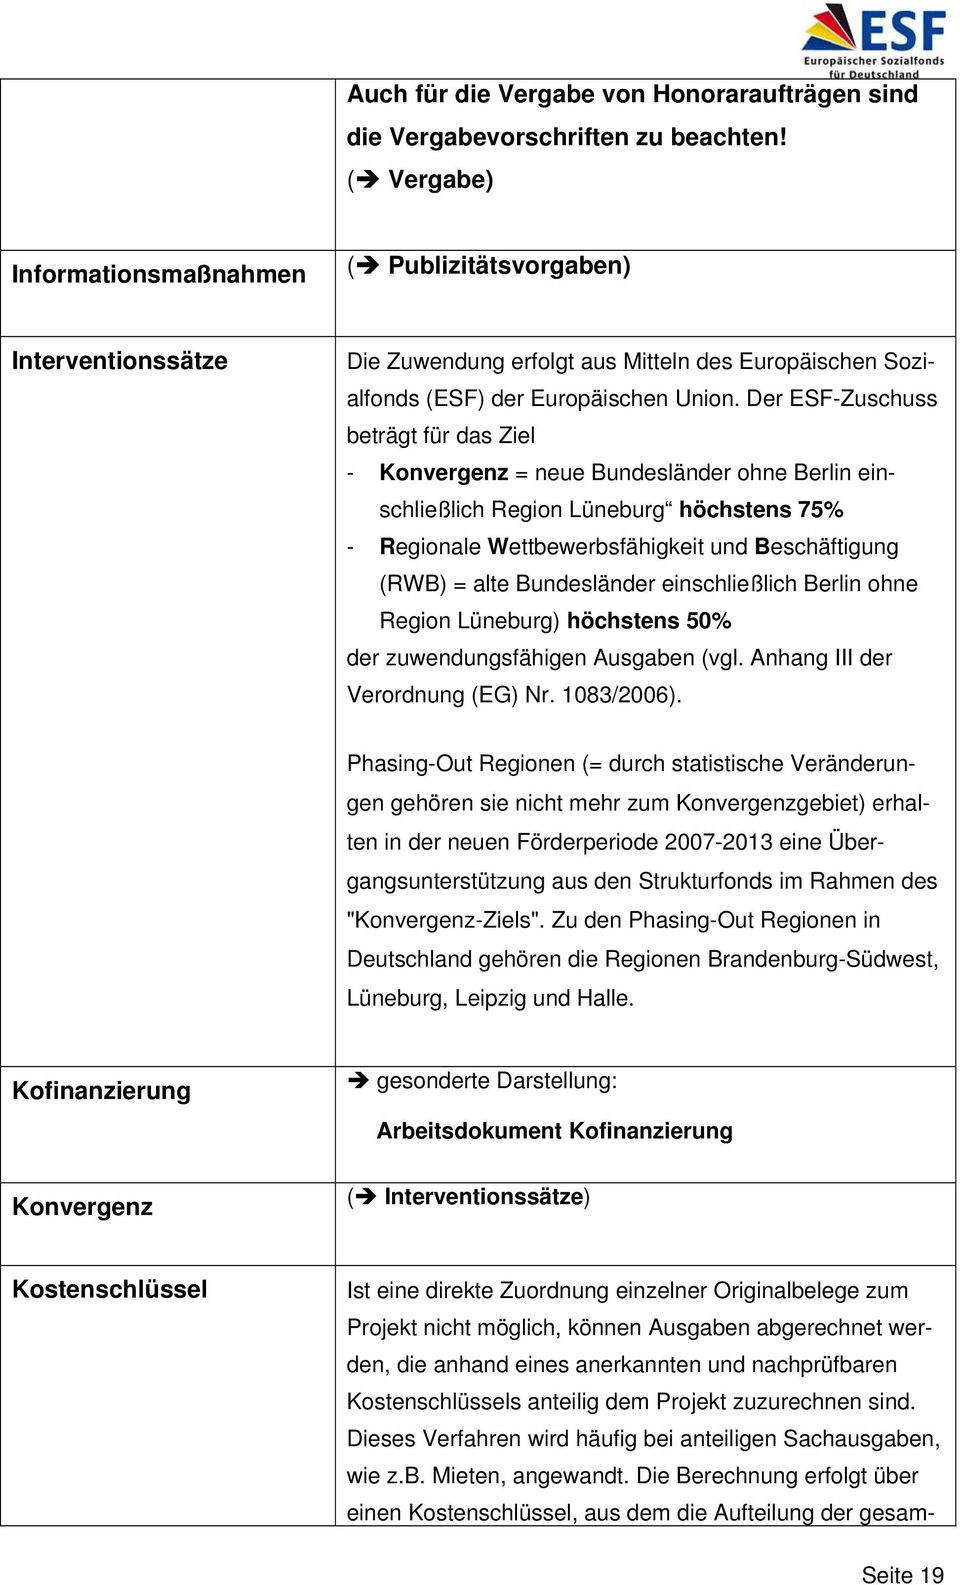 Der ESF-Zuschuss beträgt für das Ziel - Konvergenz = neue Bundesländer ohne Berlin einschließlich Region Lüneburg höchstens 75% - Regionale Wettbewerbsfähigkeit und Beschäftigung (RWB) = alte